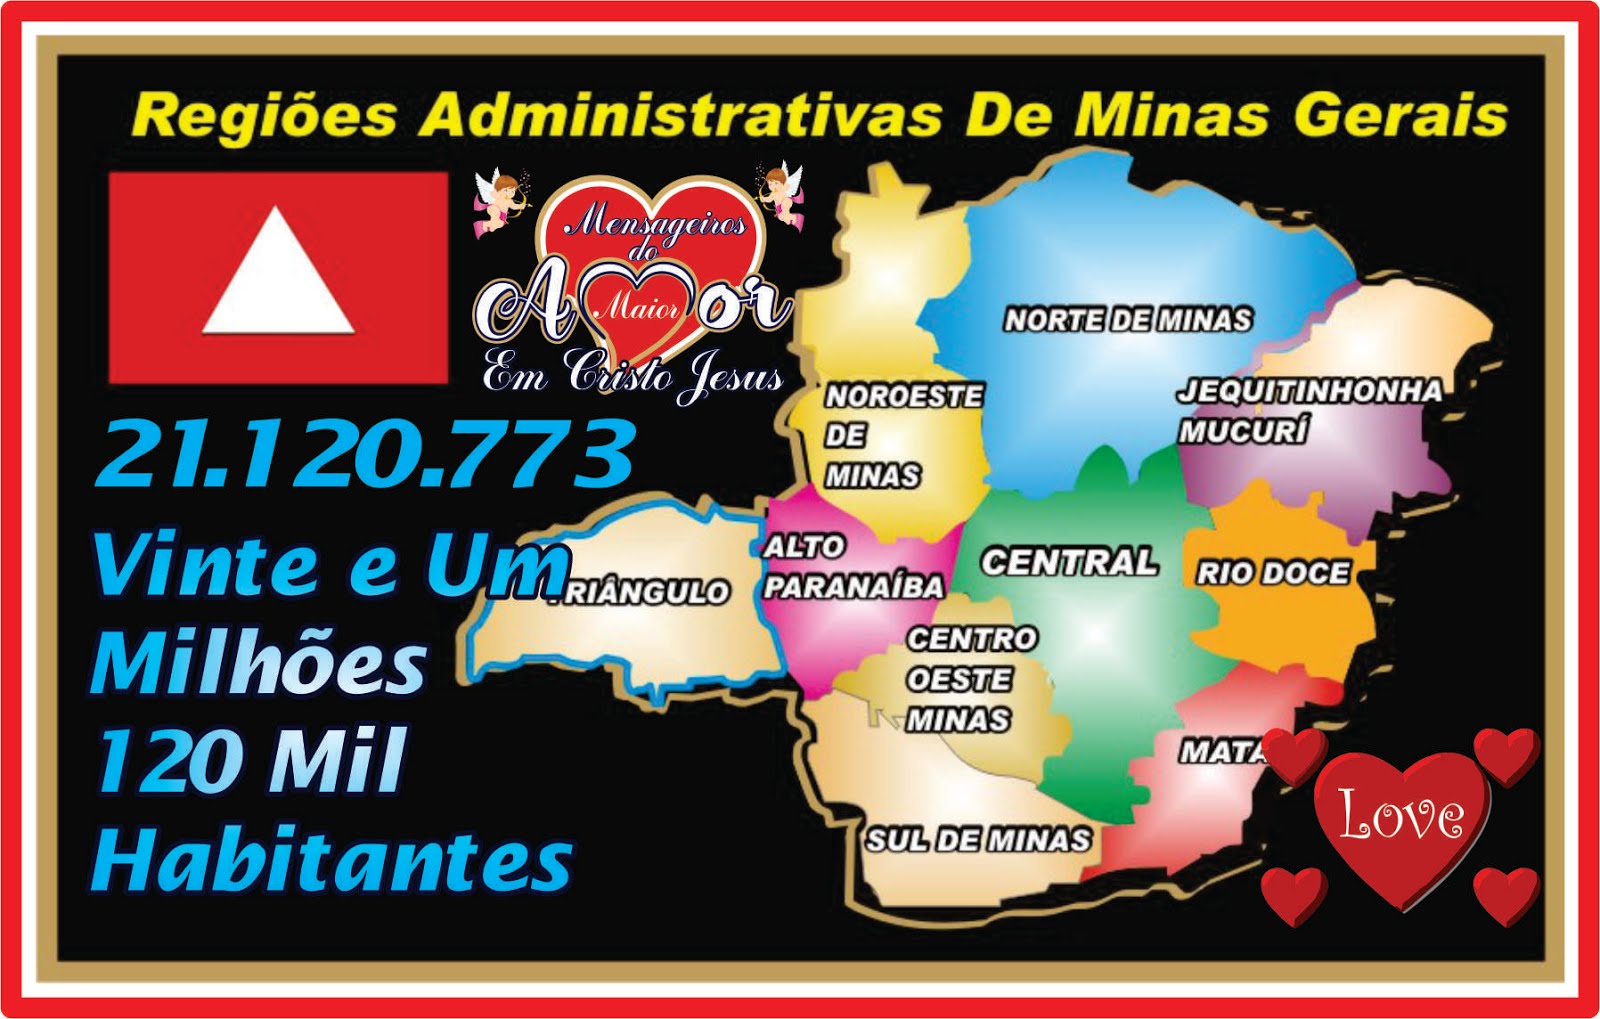 Mapa do Estado de Minas Gerais